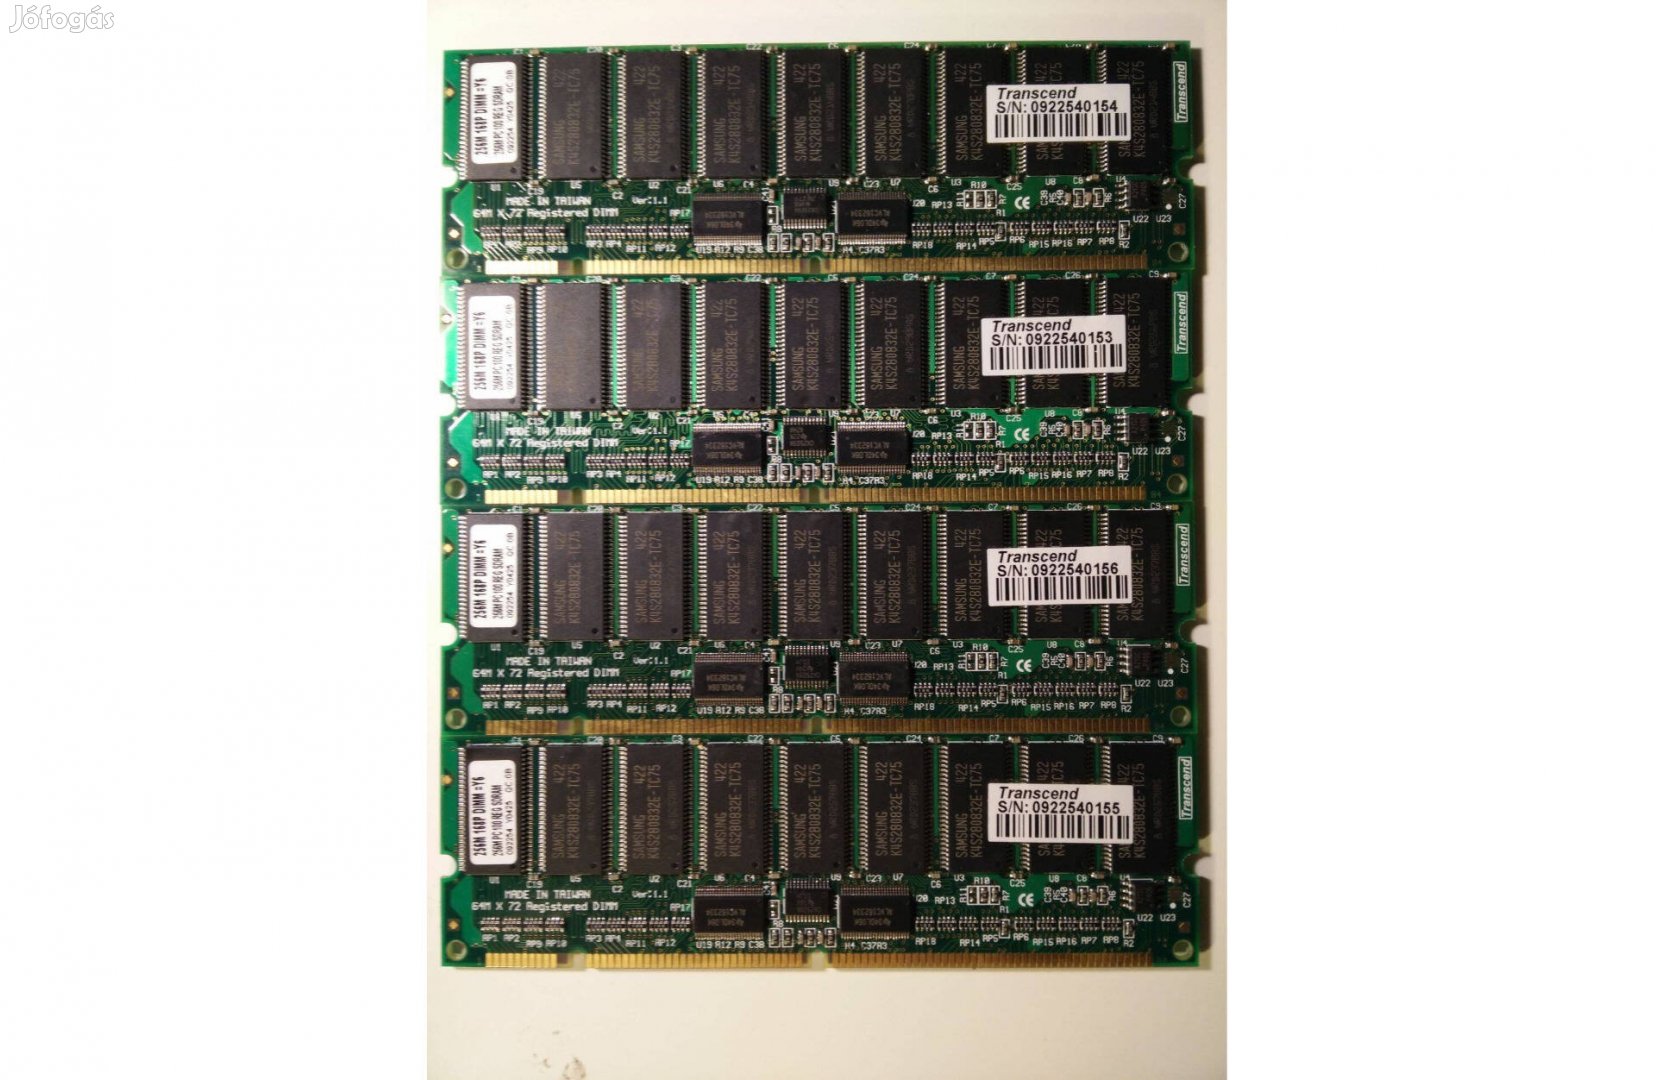 4 db Transcend 256 MB PC100 ECC SDRAM szerver memória egyben, 7 eFt/db